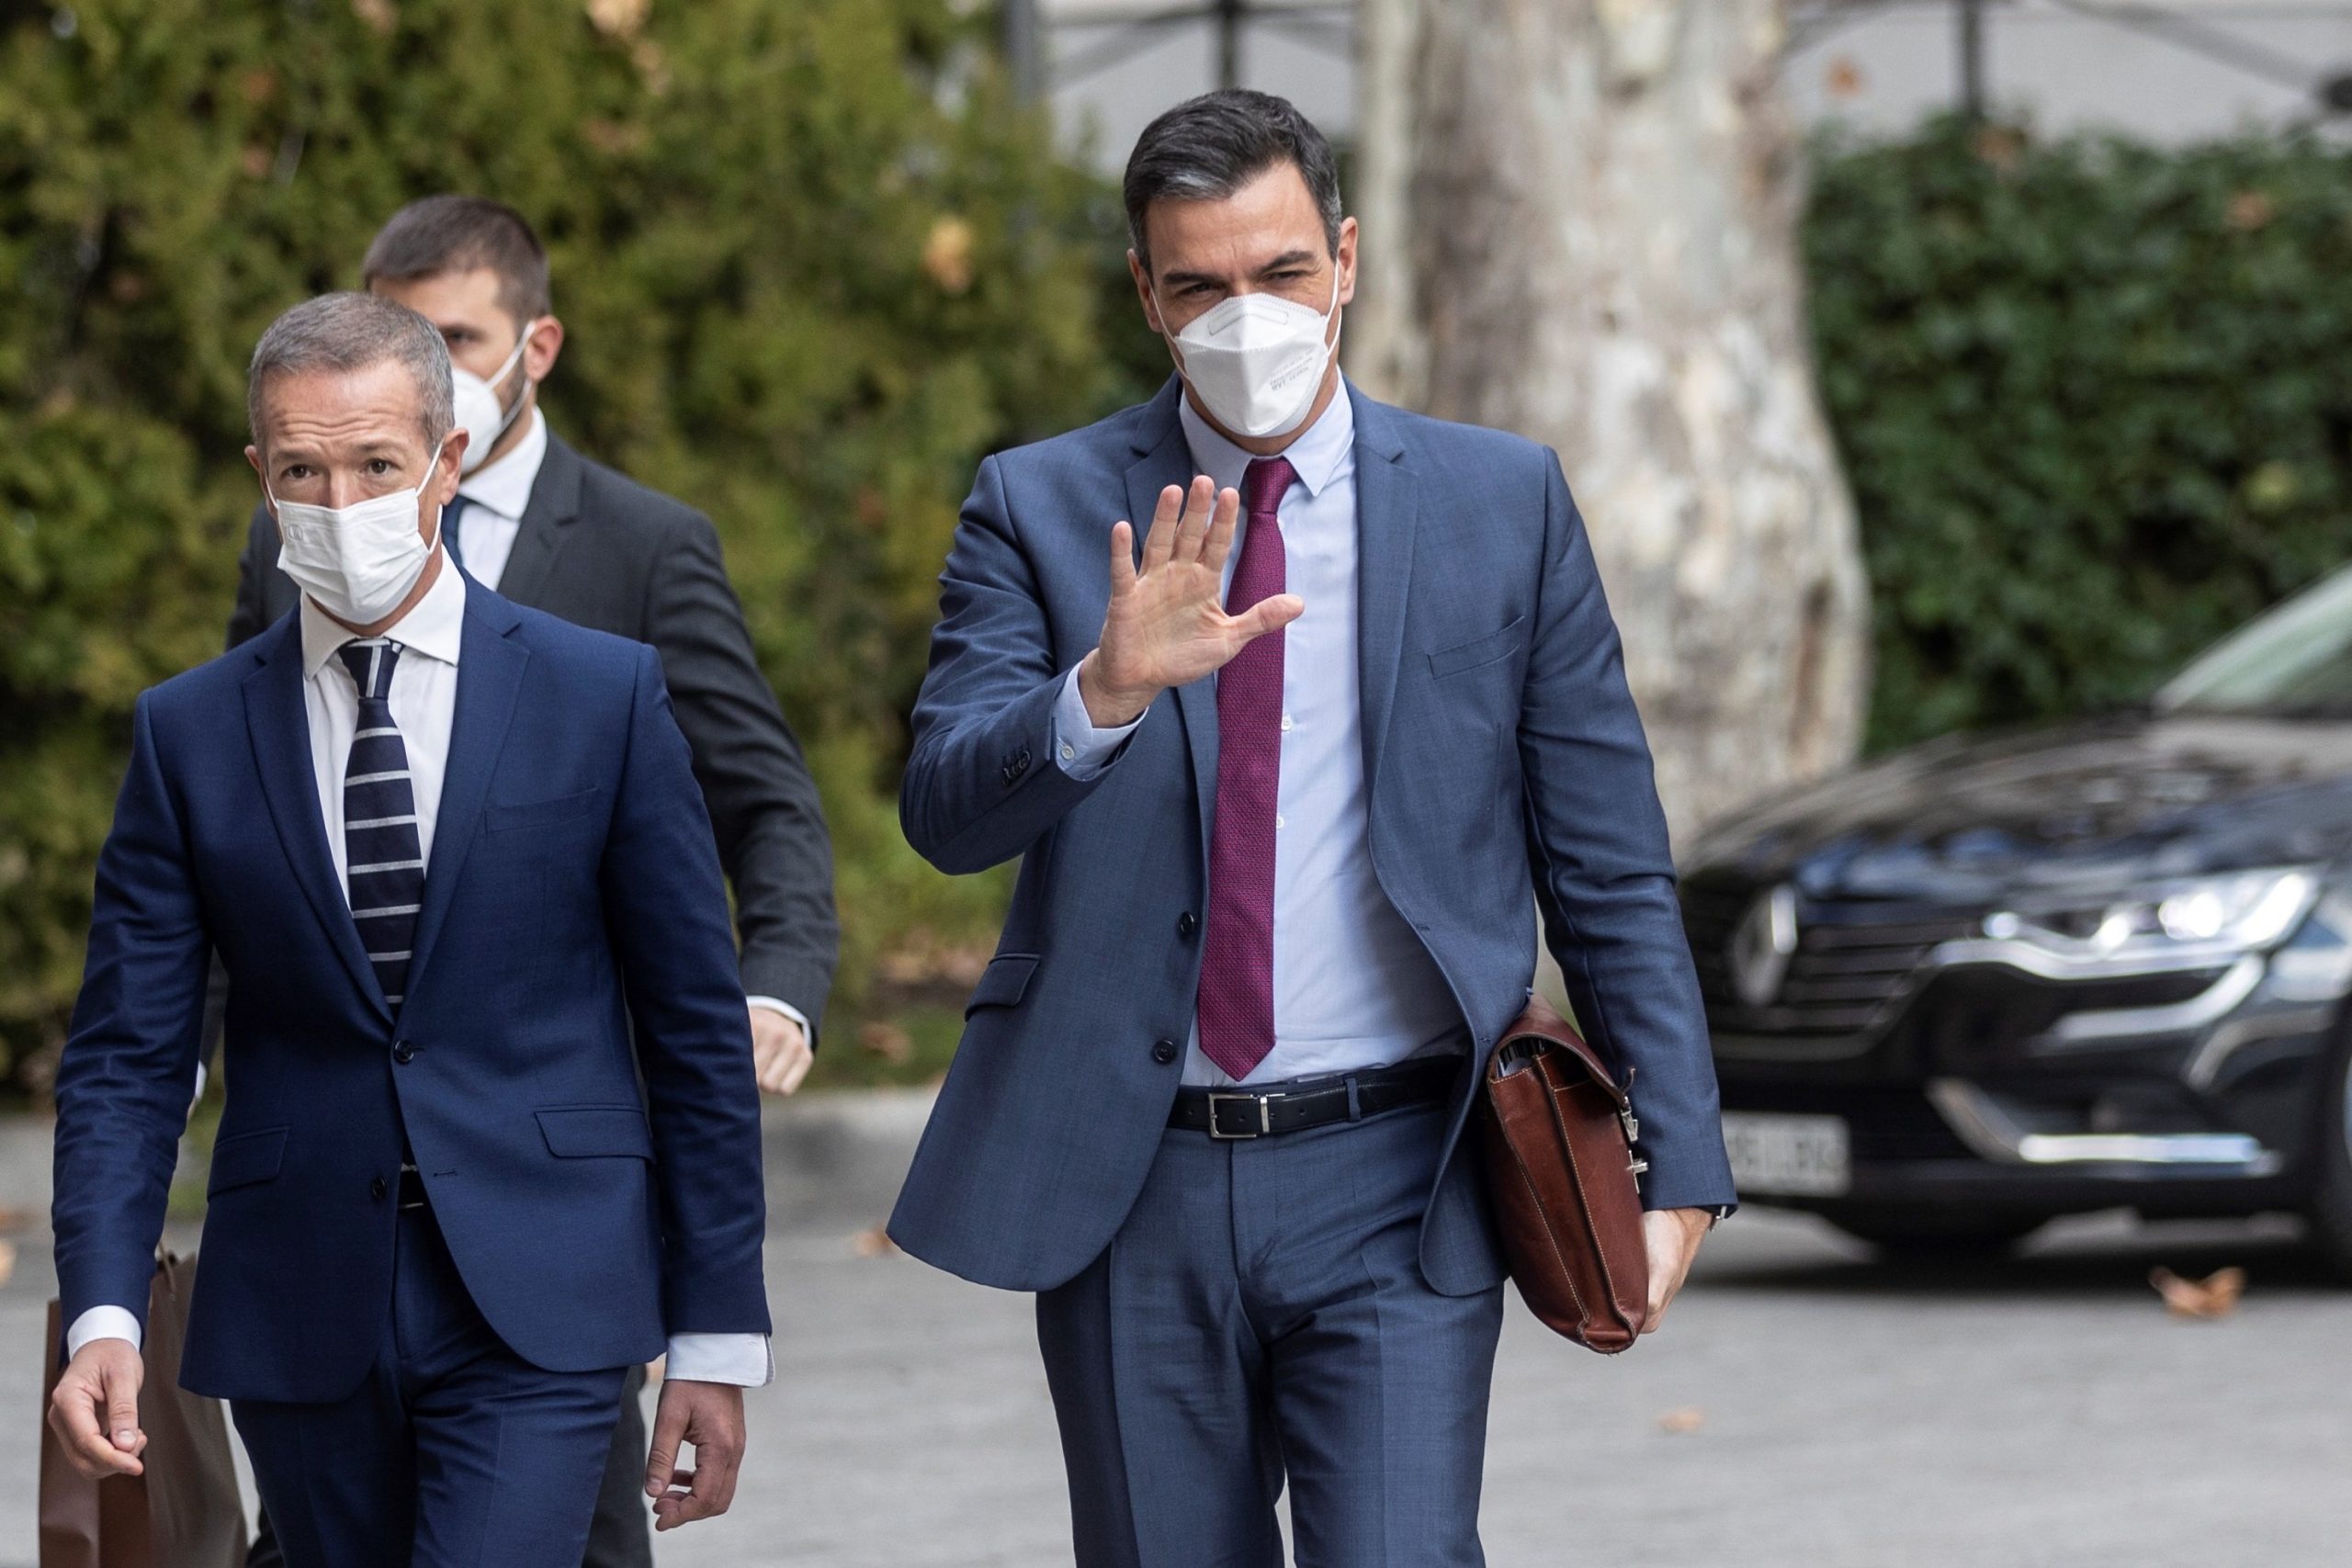 Υπόθεση Κόλντο: Μέγα σκάνδαλο διαφθοράς στην Ισπανία με μάσκες Covid-19